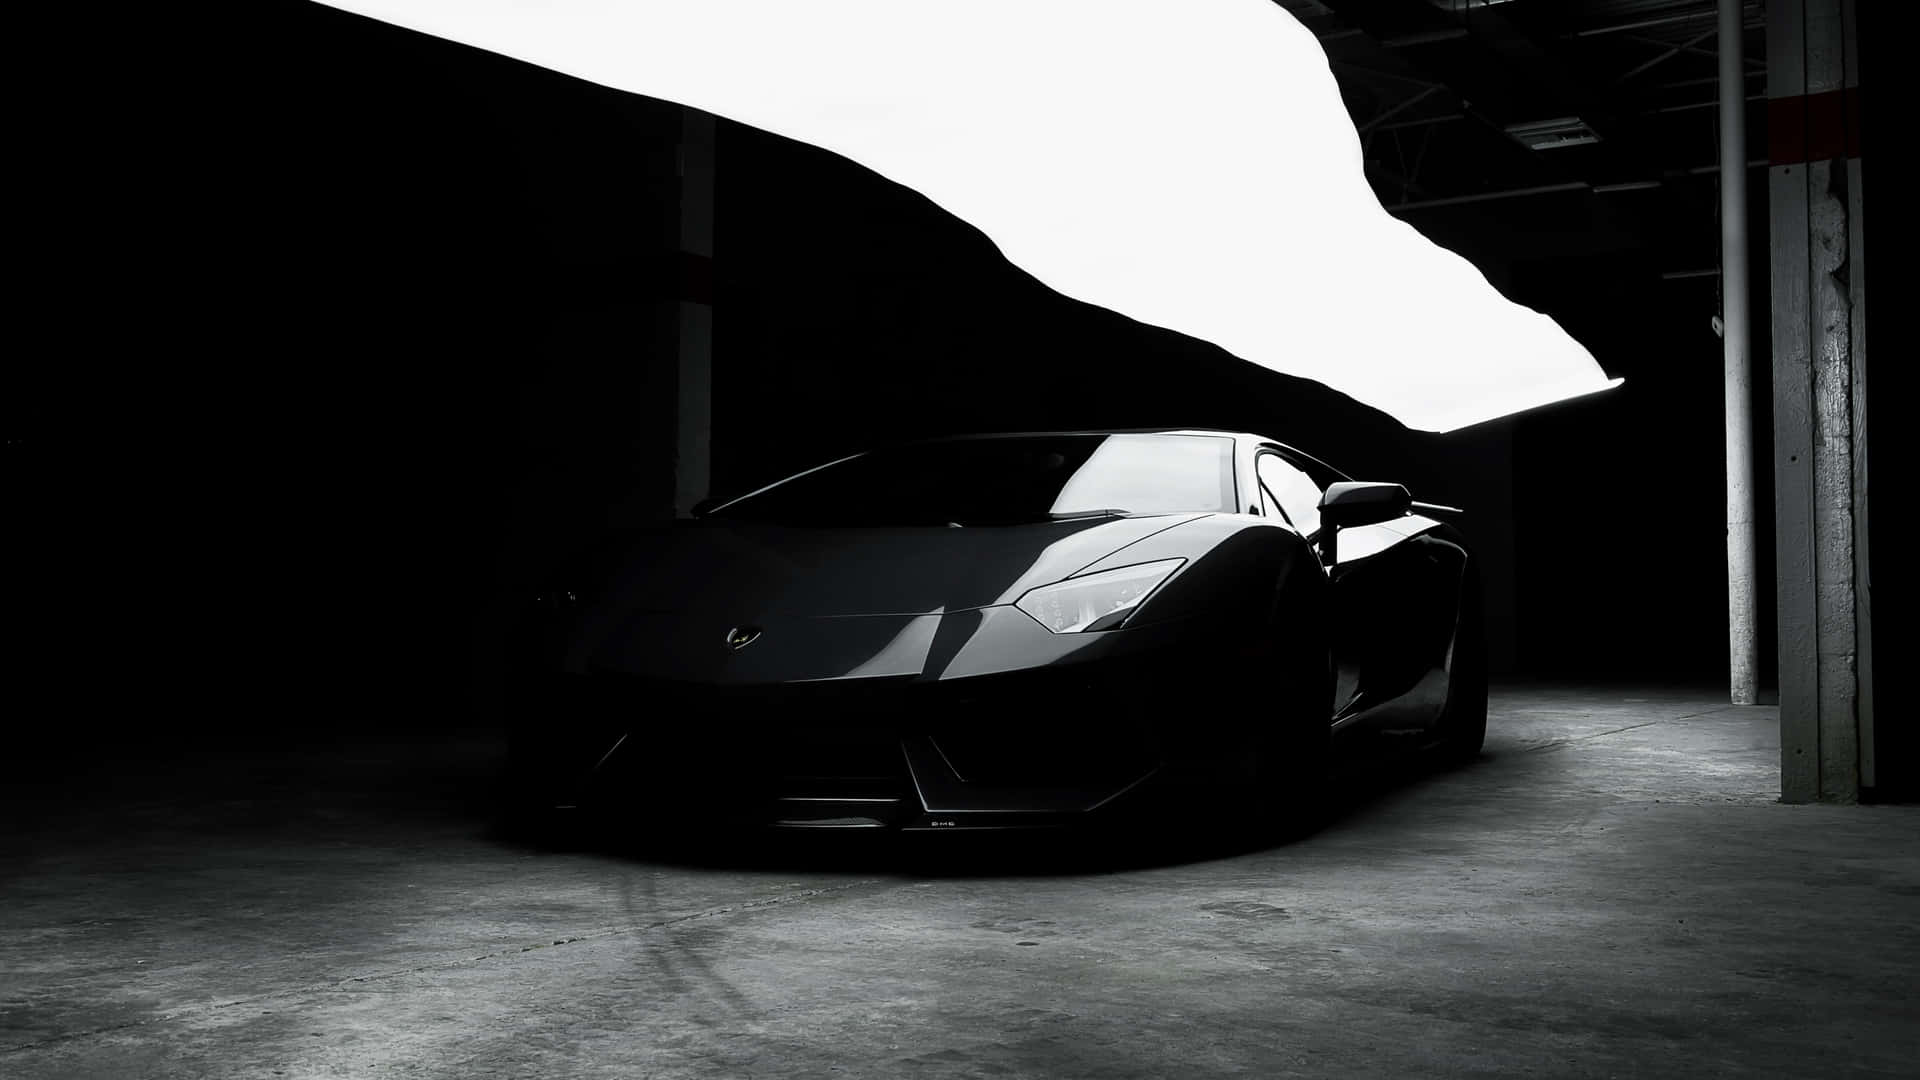 Black Sports Carin Shadowy Garage.jpg Wallpaper